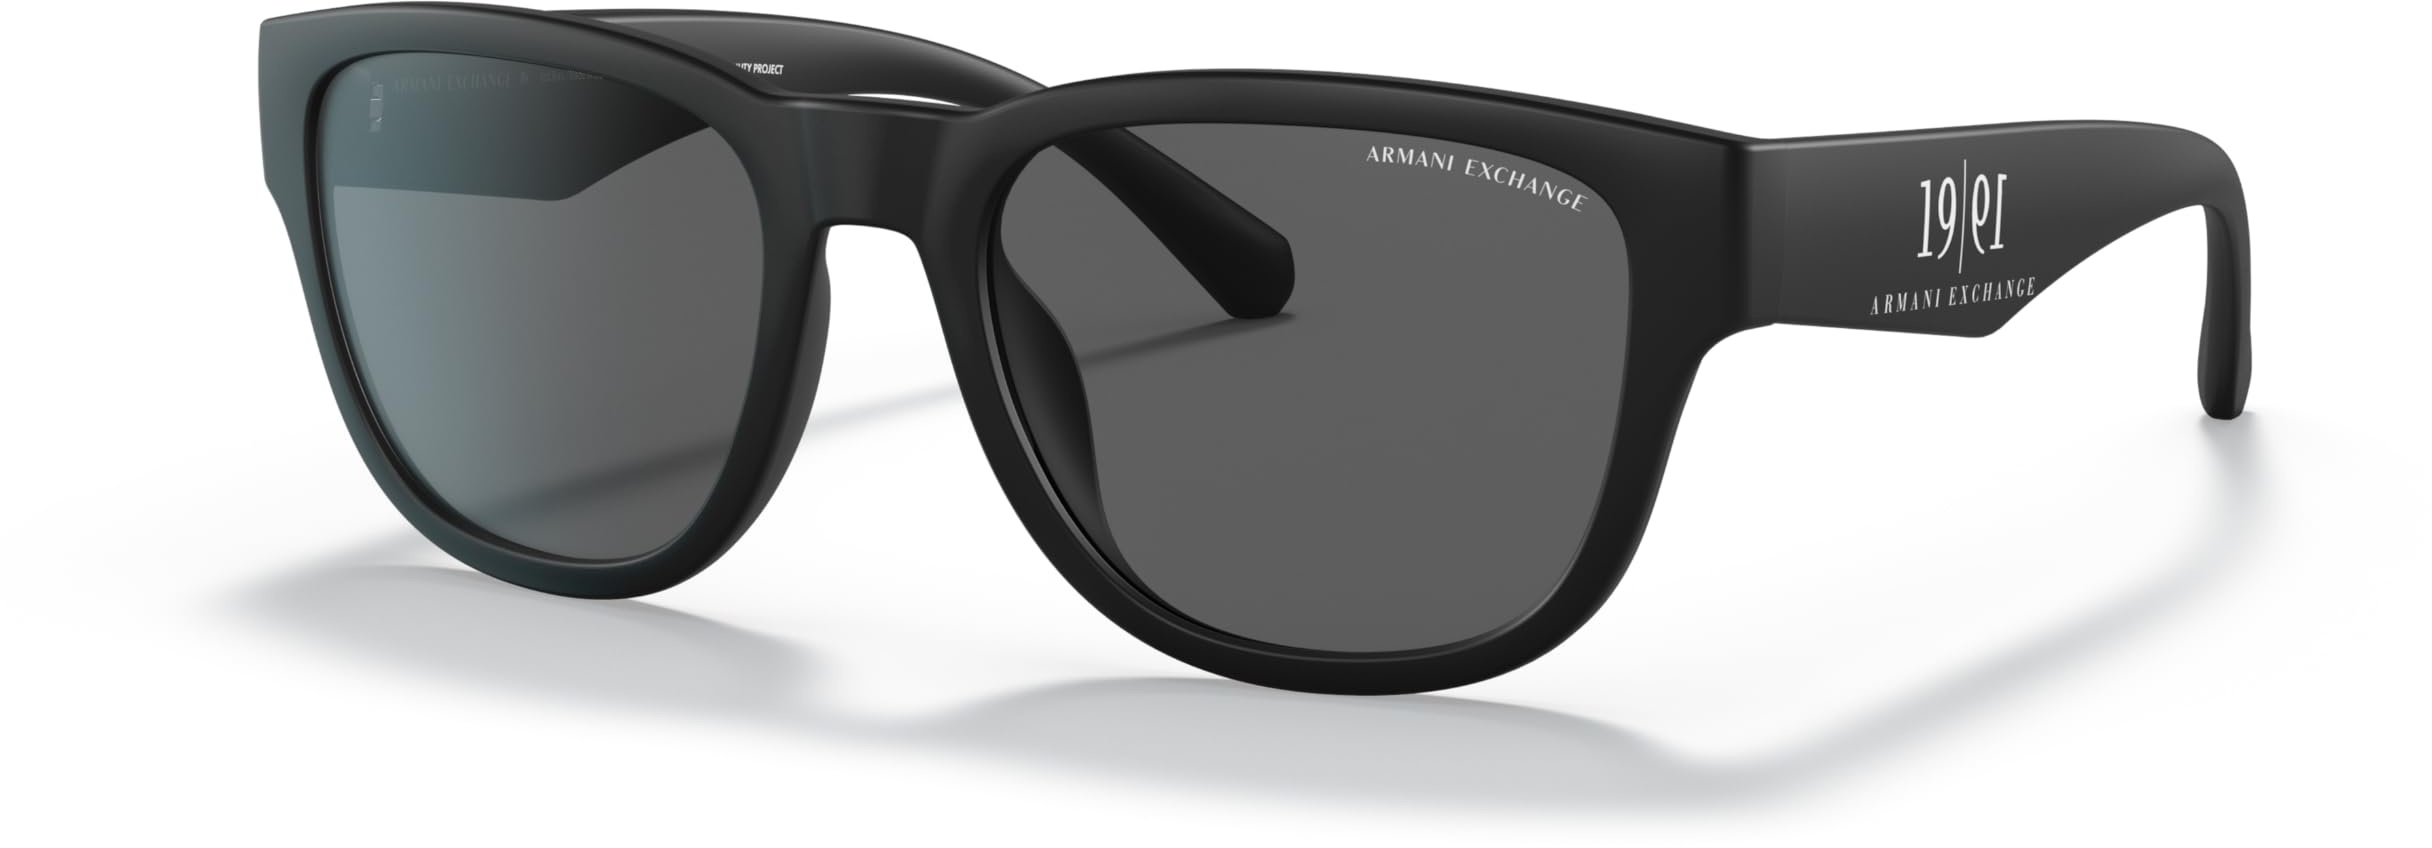 A|X ARMANI EXCHANGE Ax4115su Herren Universal-Sonnenbrille, quadratisch, Mattschwarz/Dunkelgrau, 54 mm - 54 mm